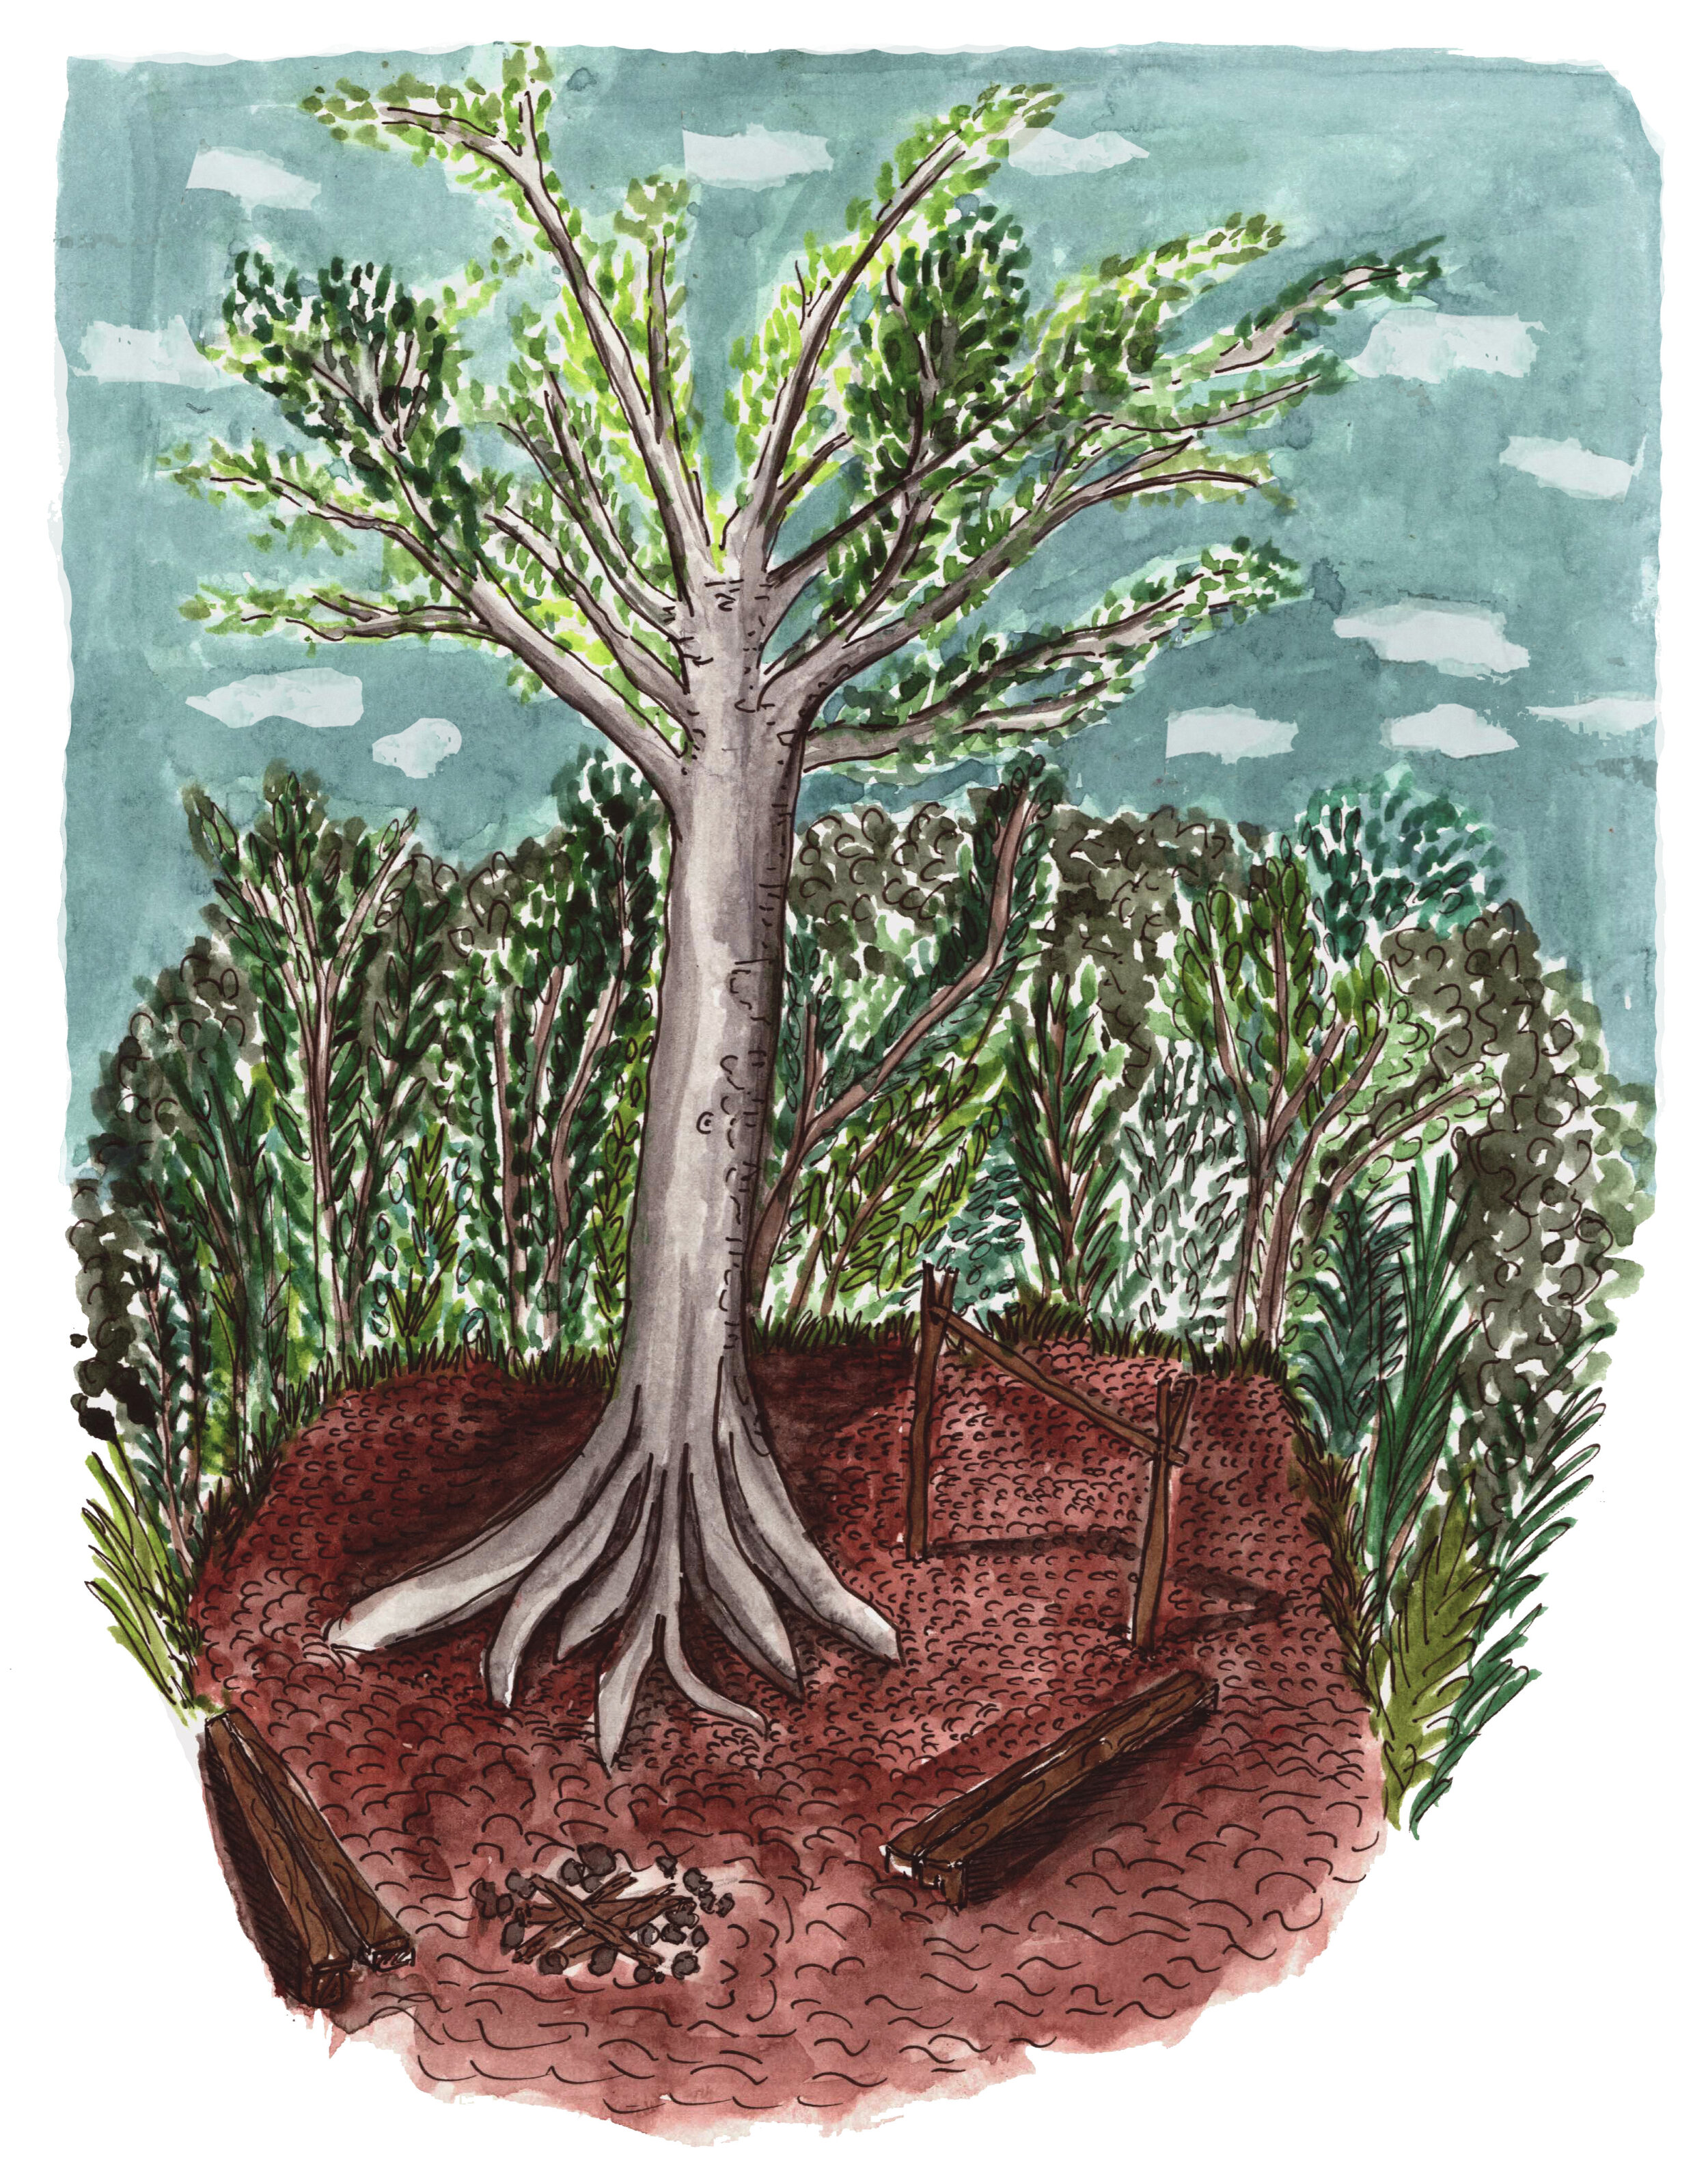 5- Ceiba Tree revised.jpg